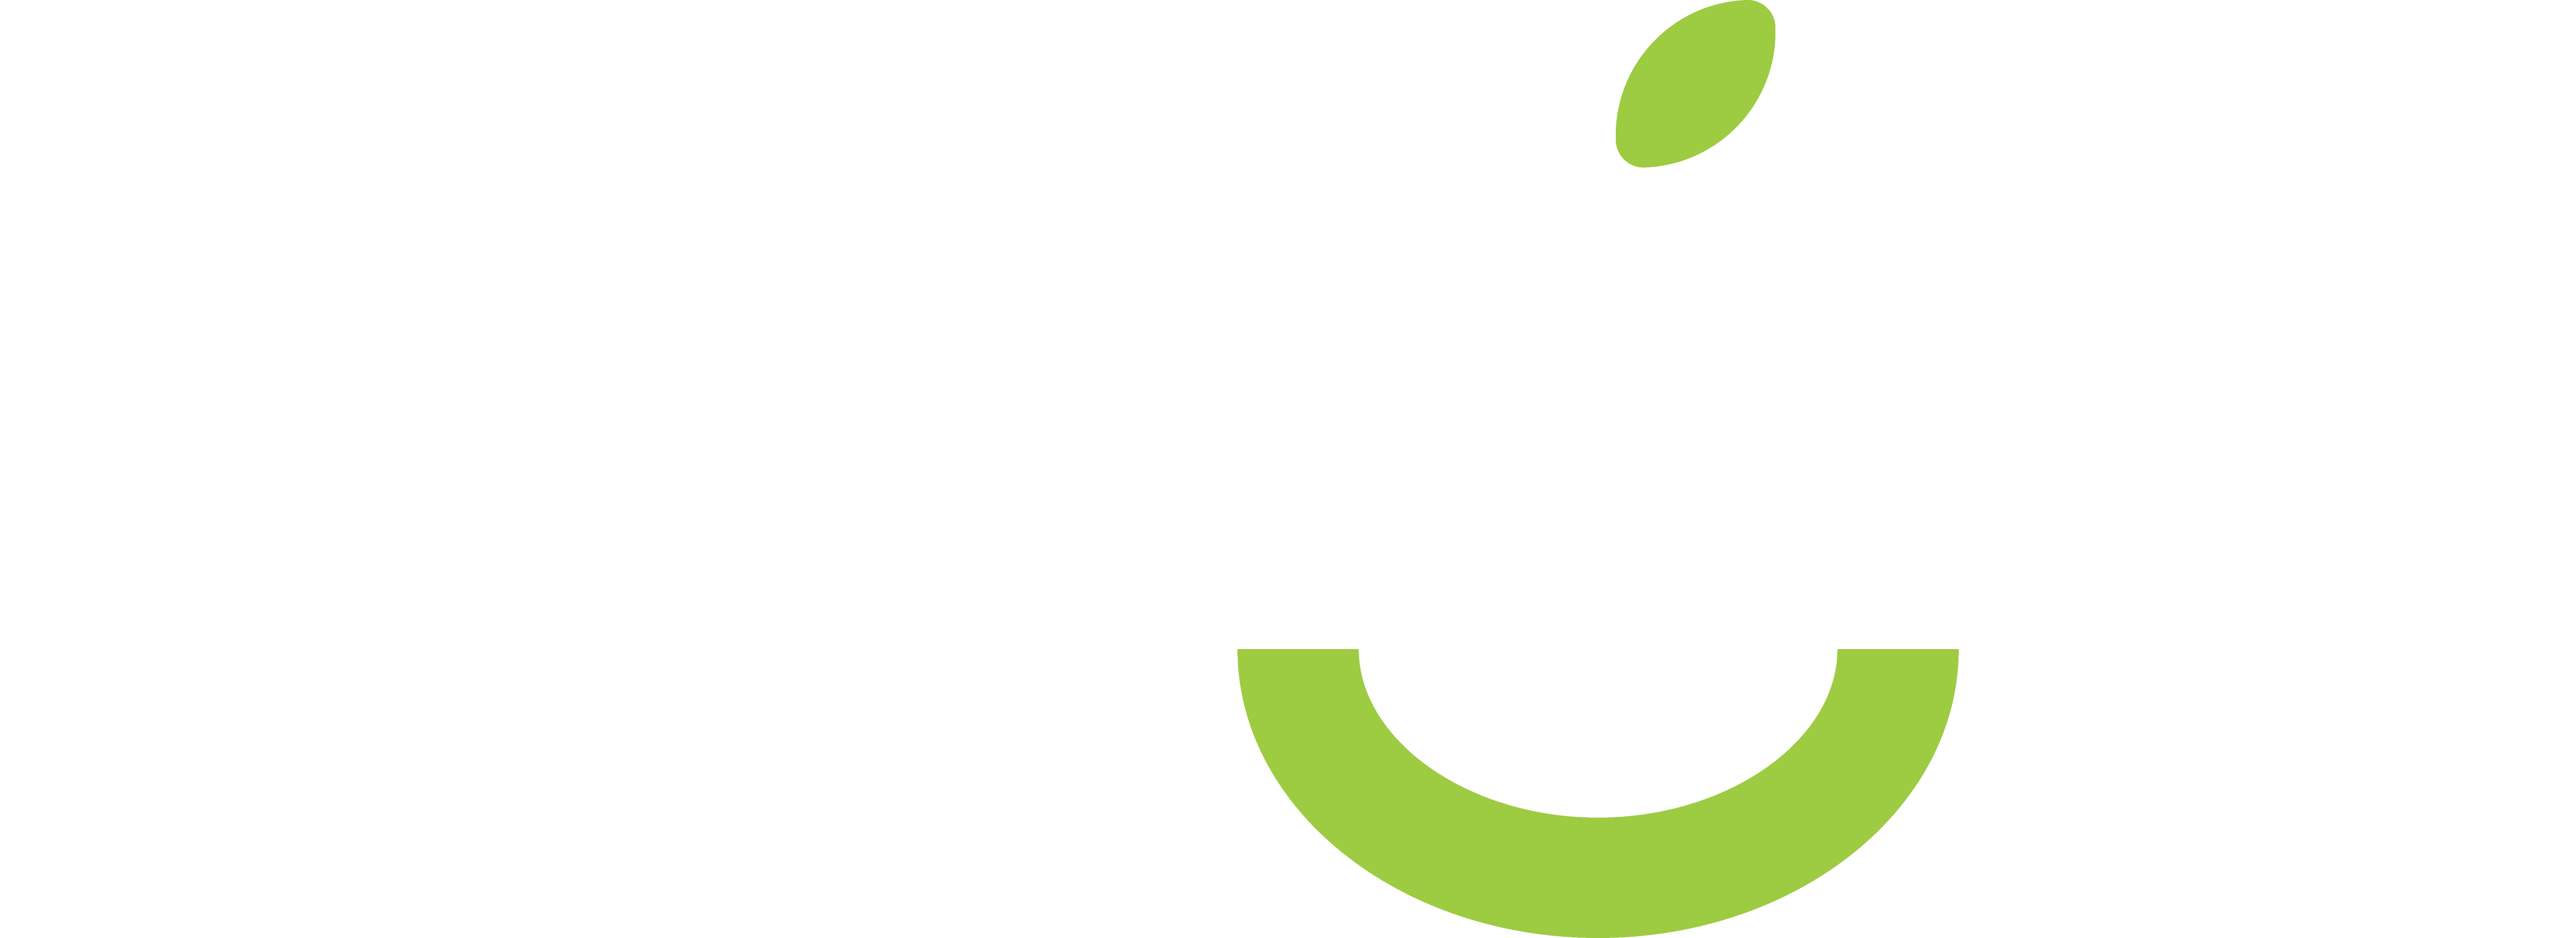 Pear Sox Corporation Logo